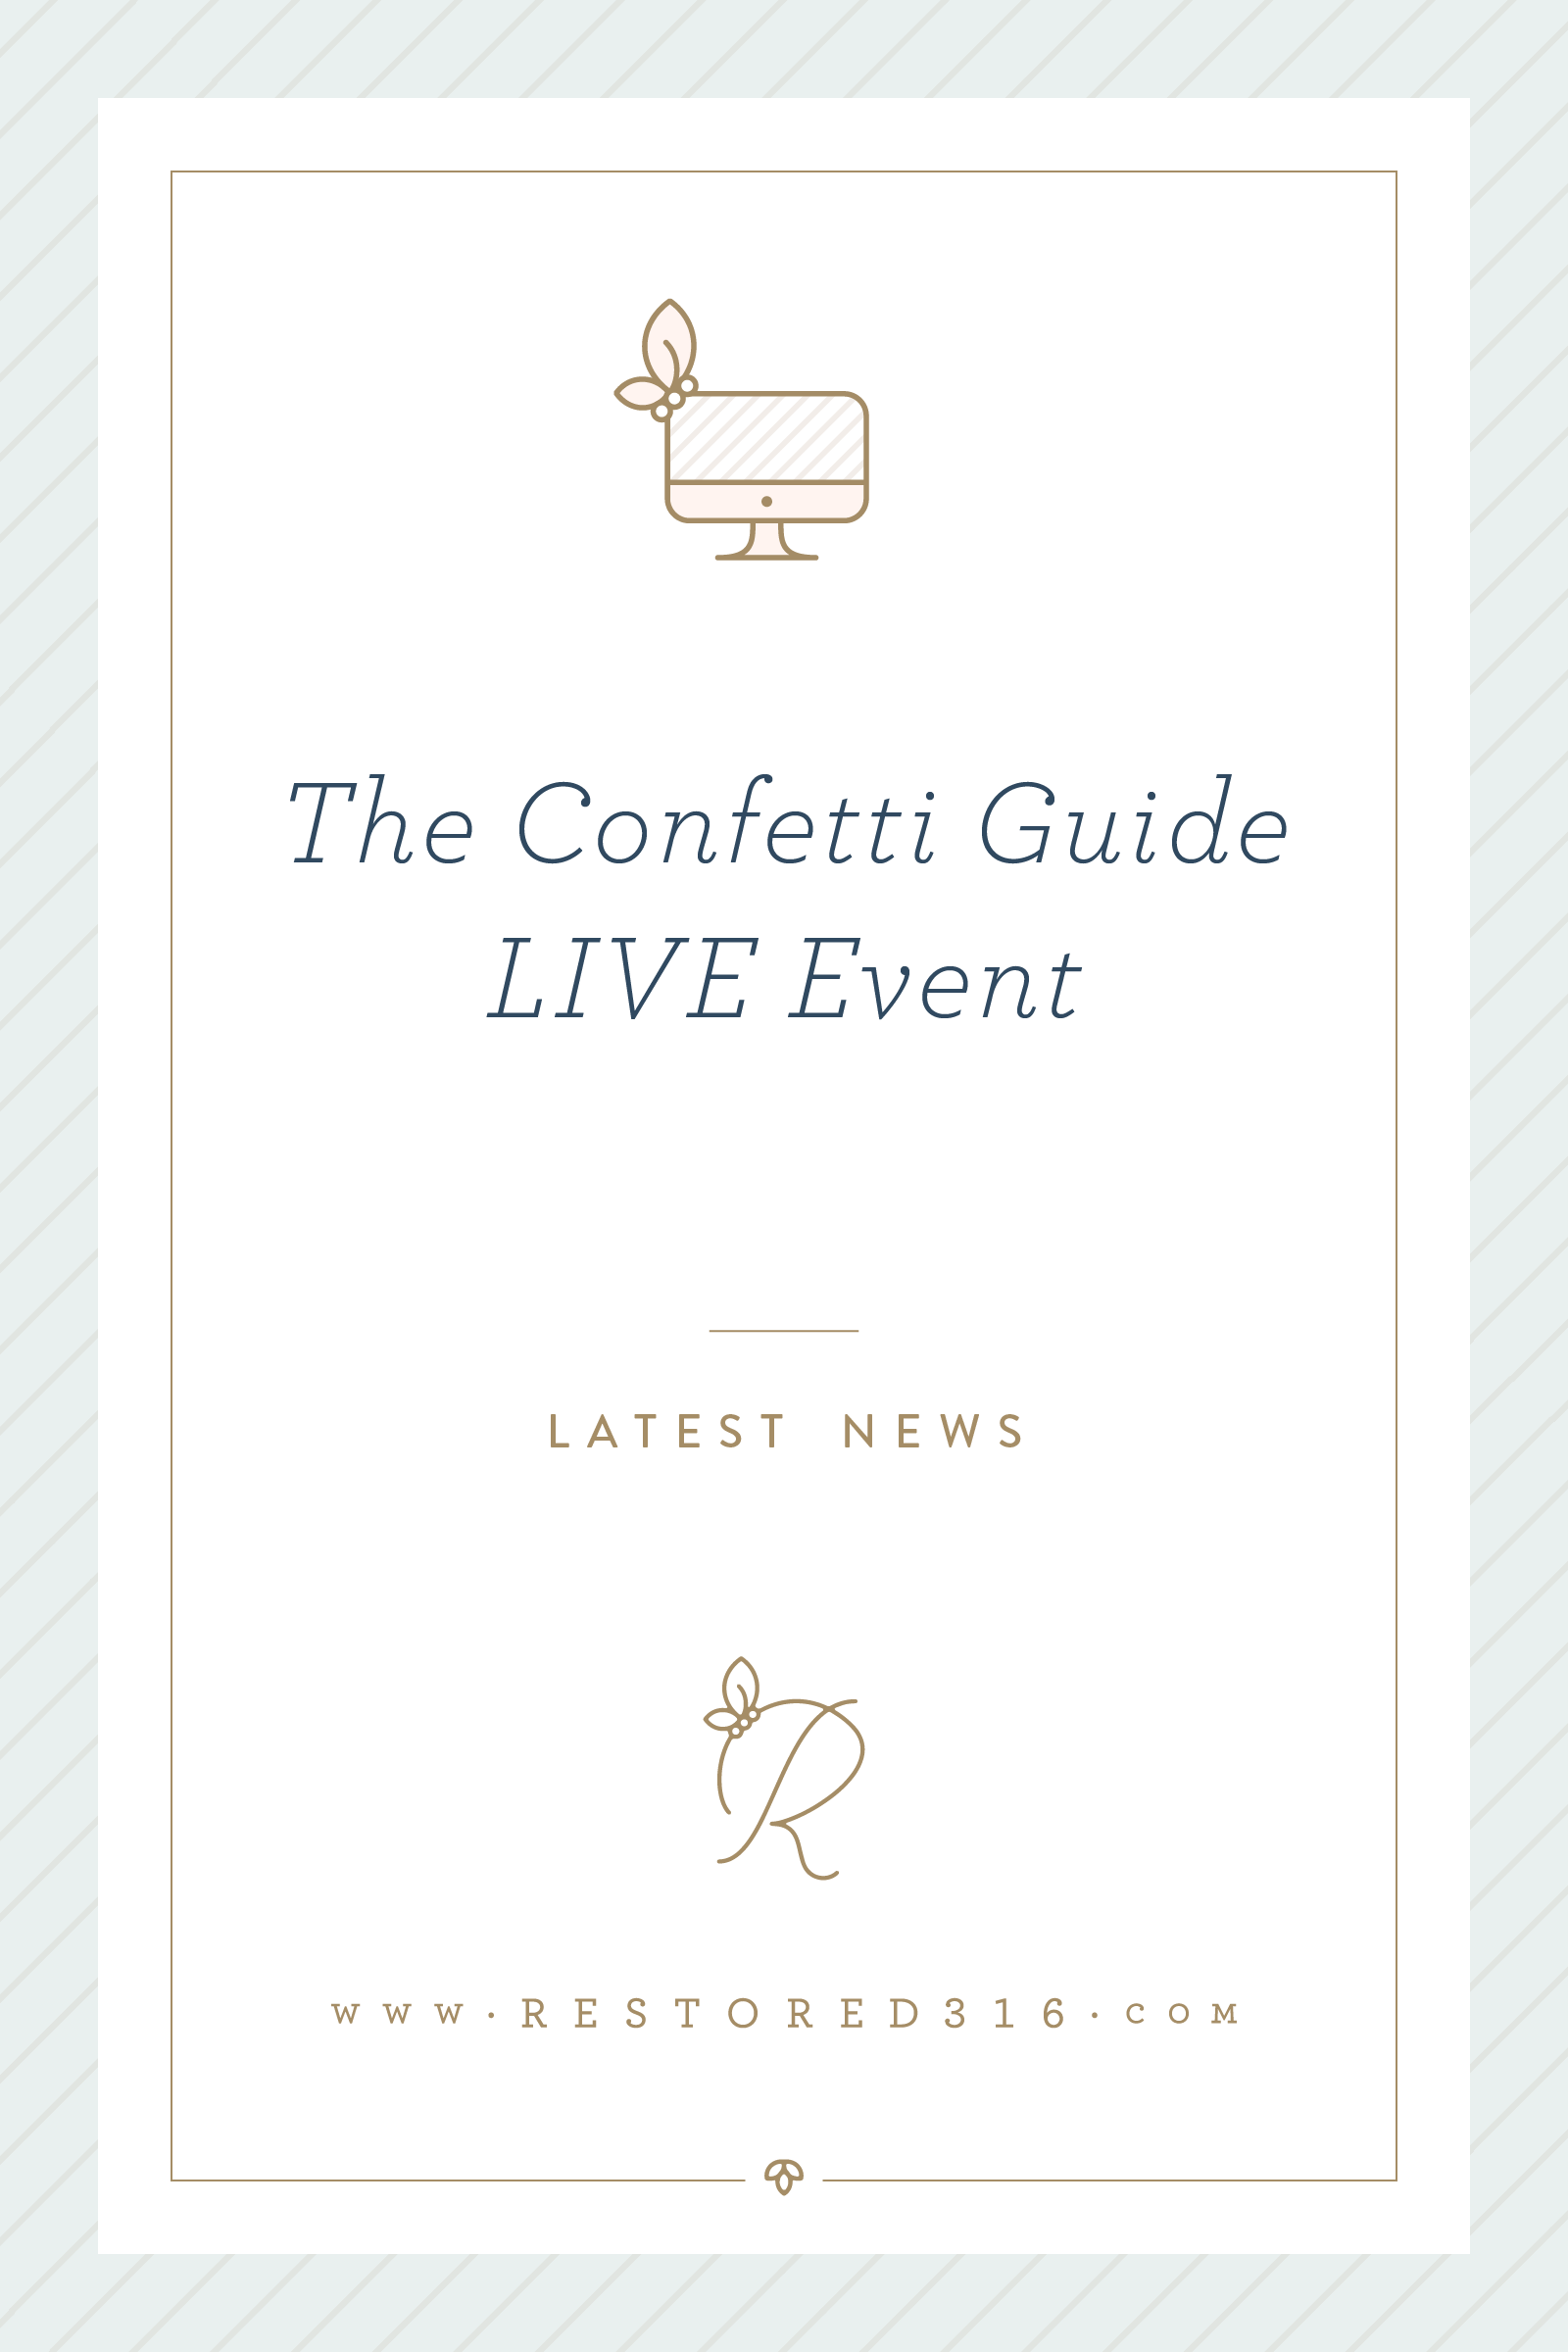 The Confetti Guide LIVE event